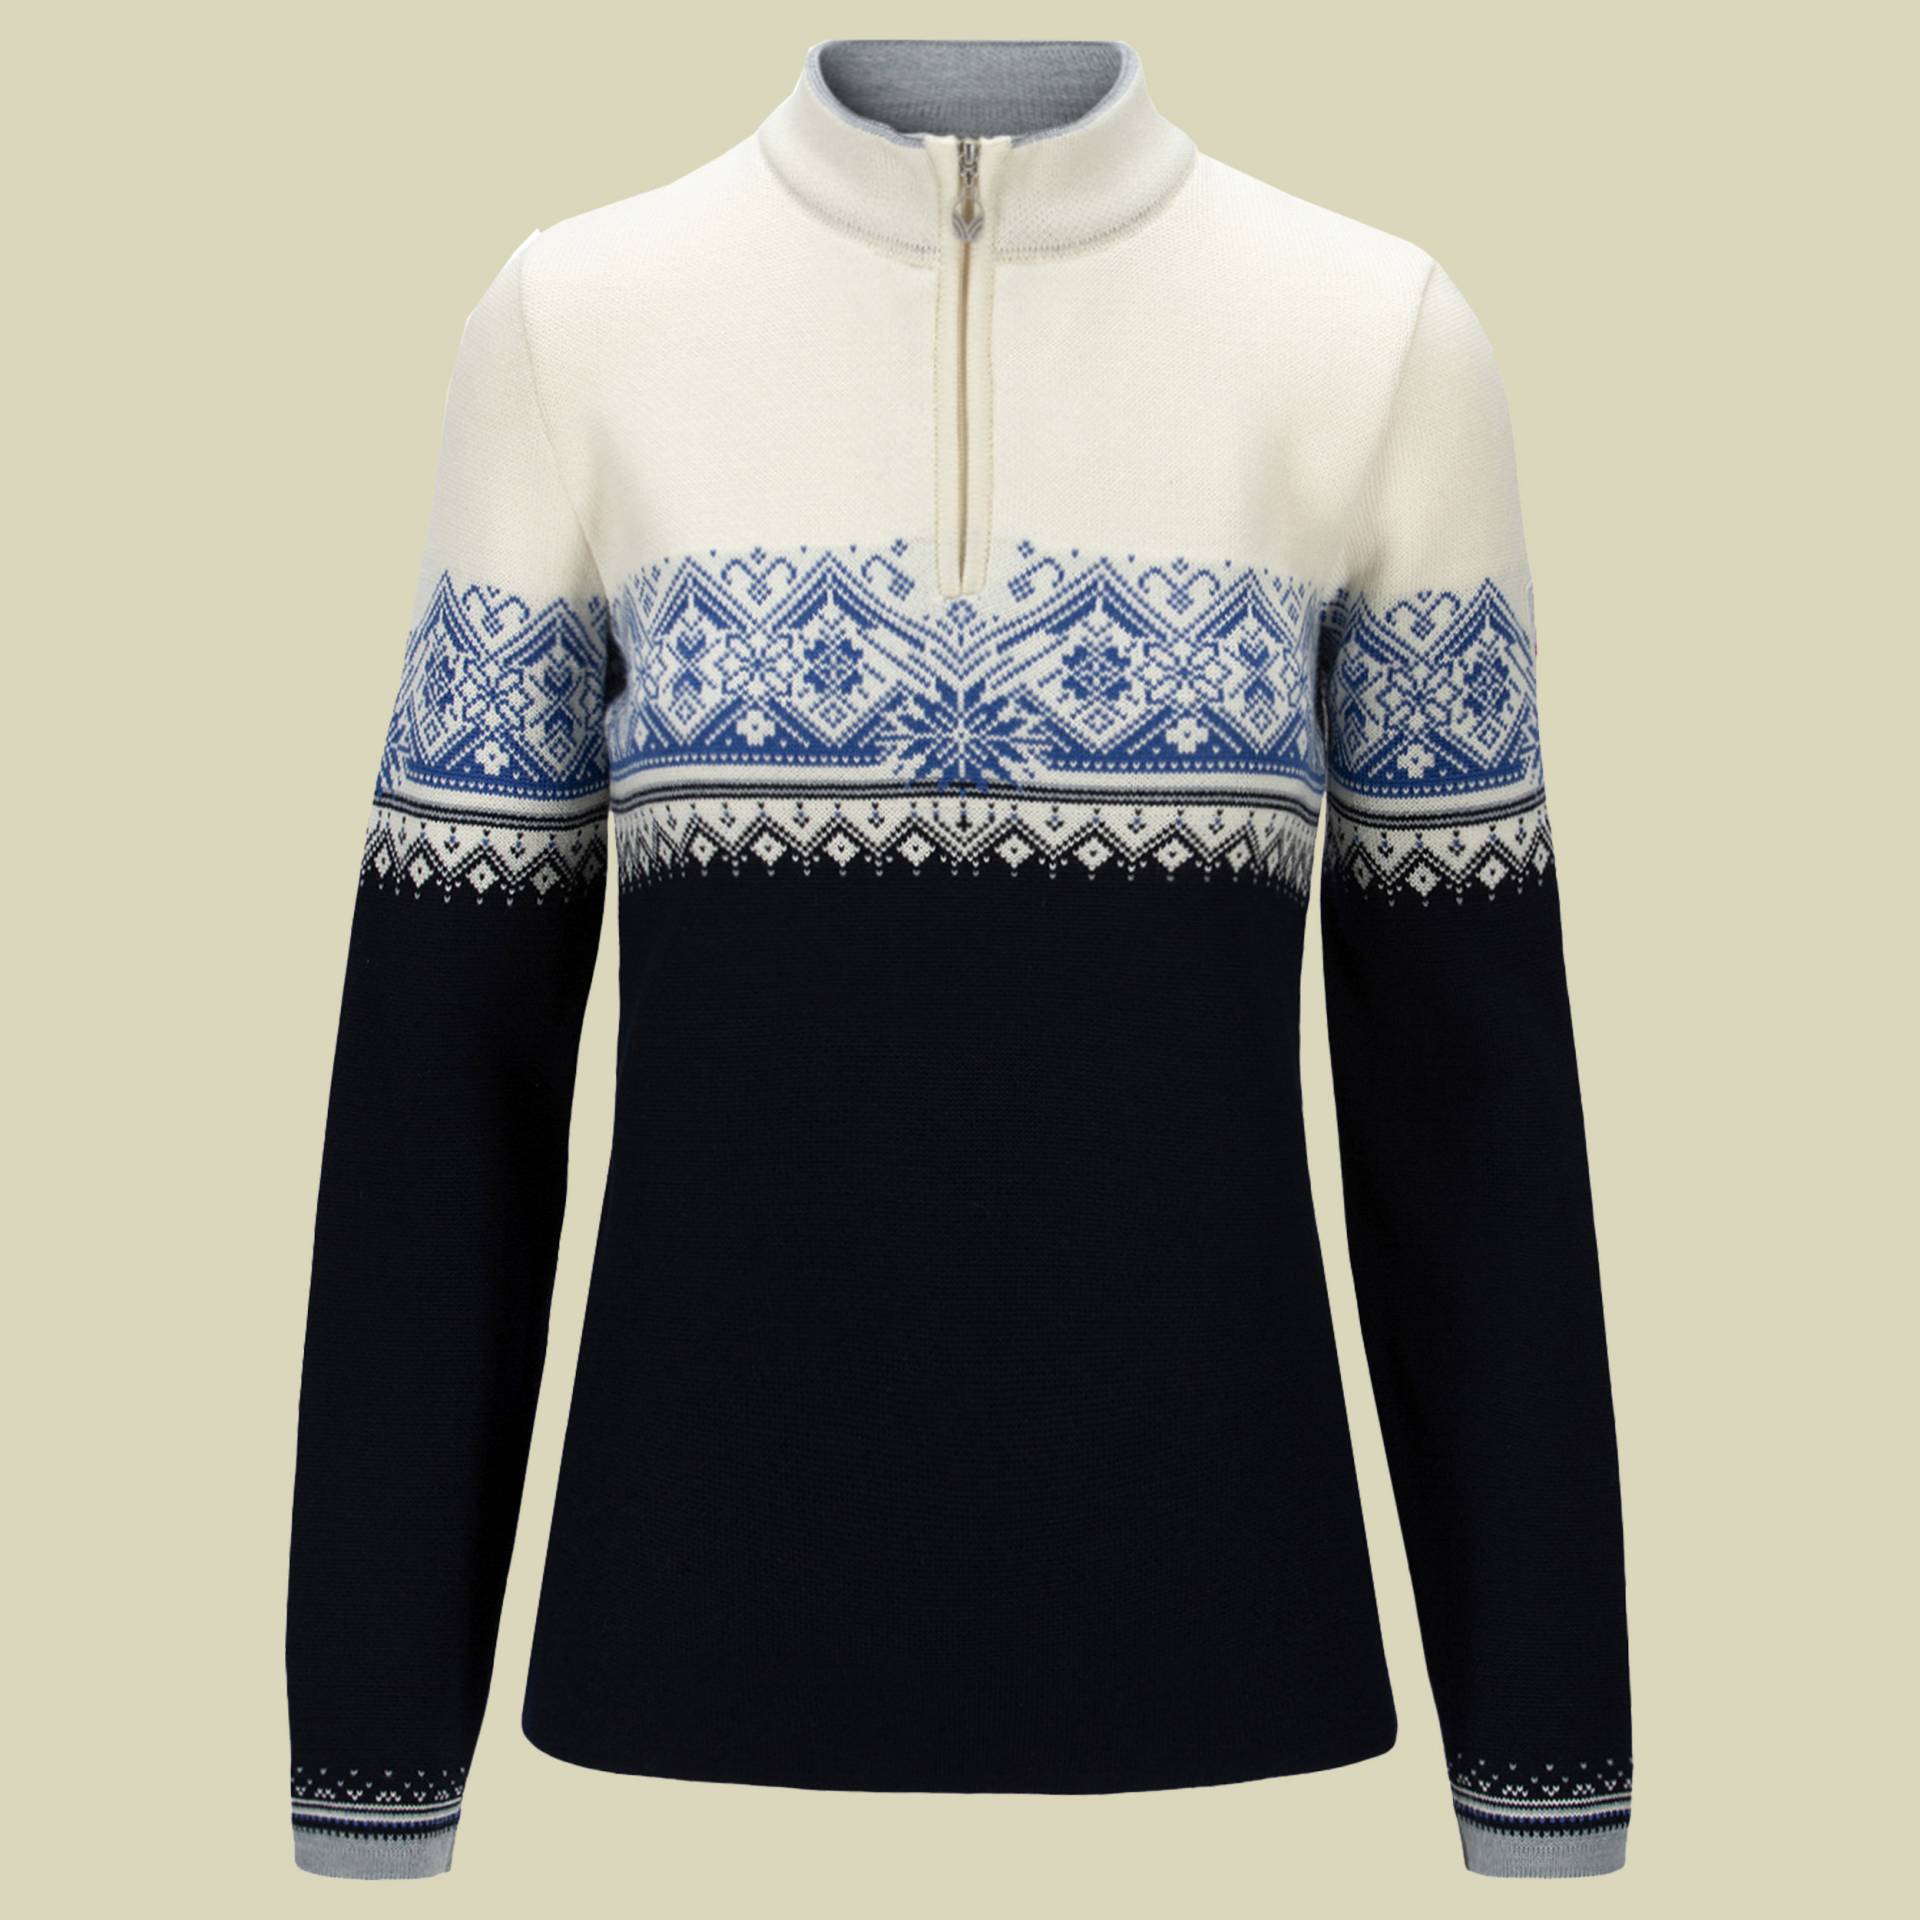 Moritz Sweater Women Größe S Farbe navy-white-ultramarine von Dale of Norway